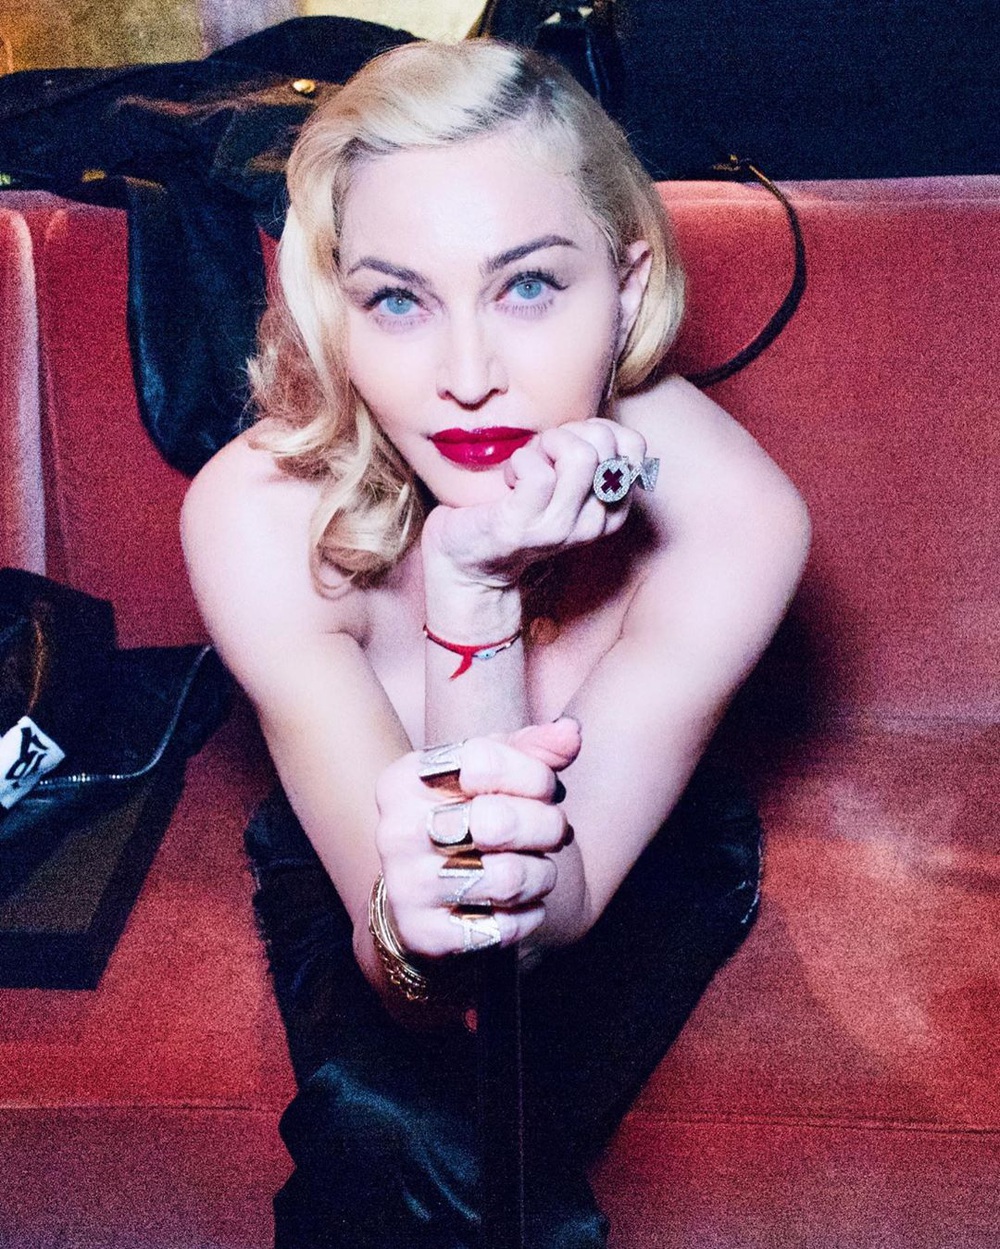 Nhan sắc Madonna ở tuổi 62 và chuyện tình với phi công kém 36 tuổi - Ảnh 15.